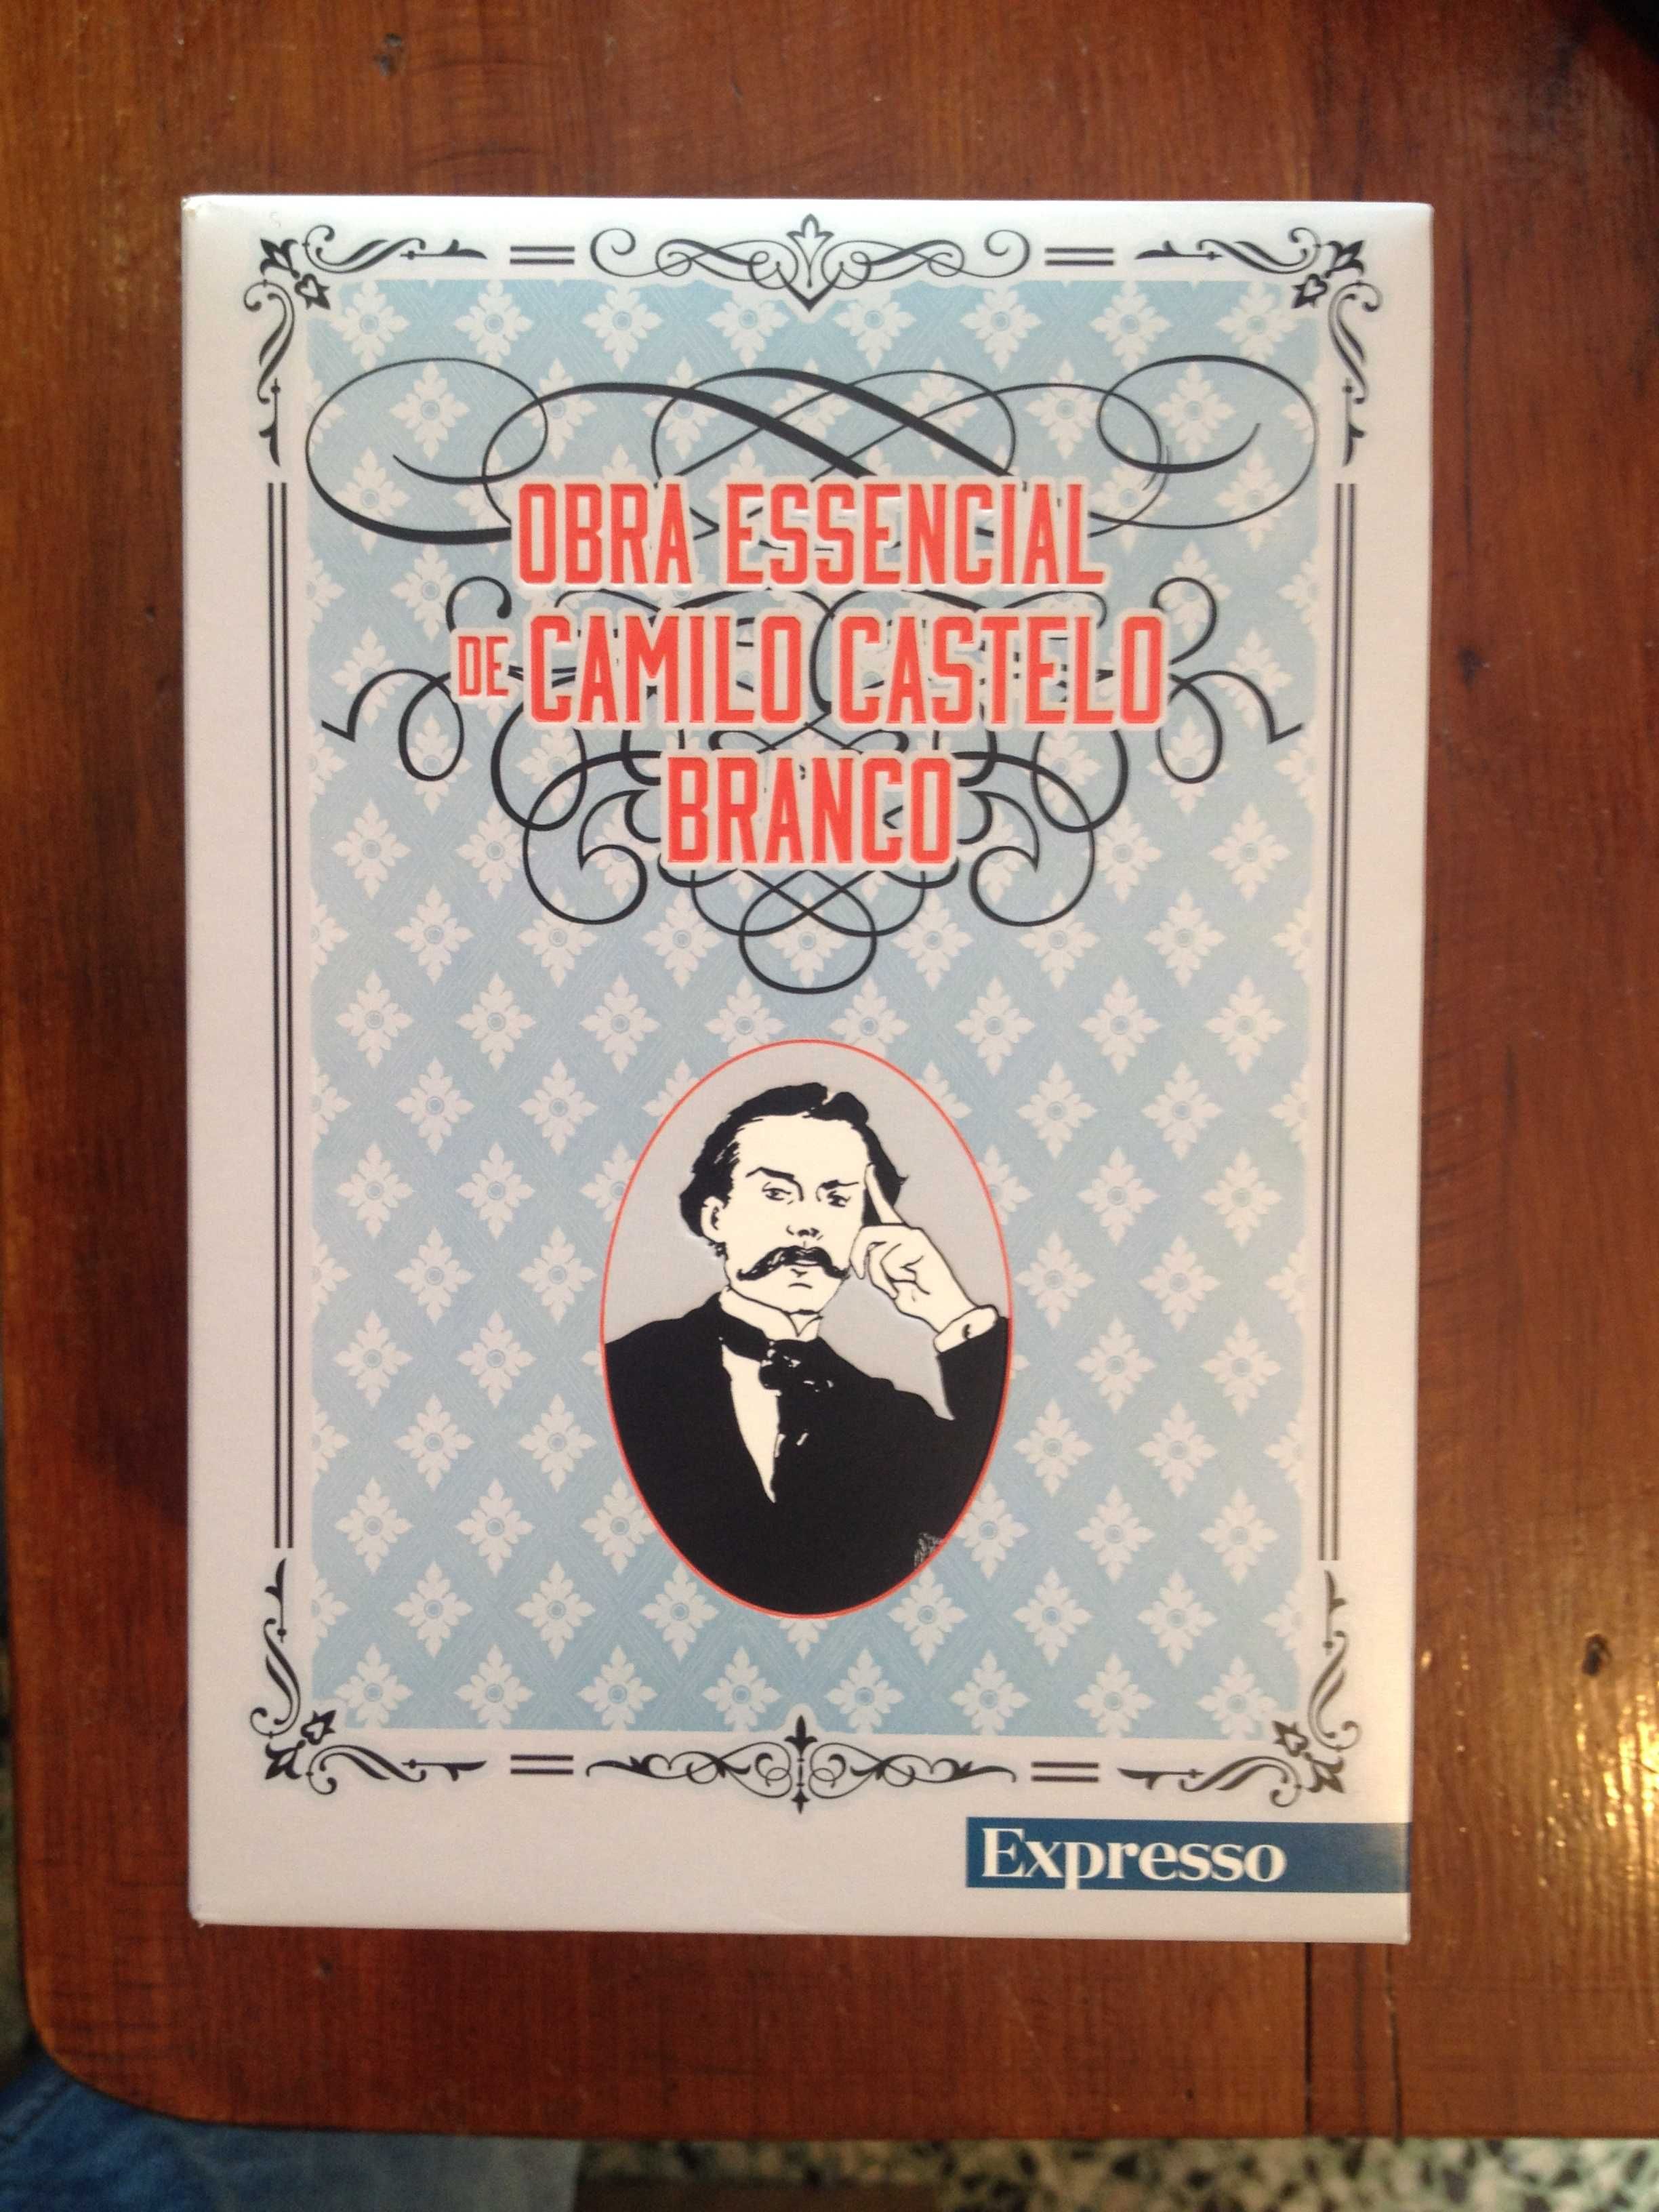 Obra Essencial de Camilo de Castelo Branco (box Expresso - completo)